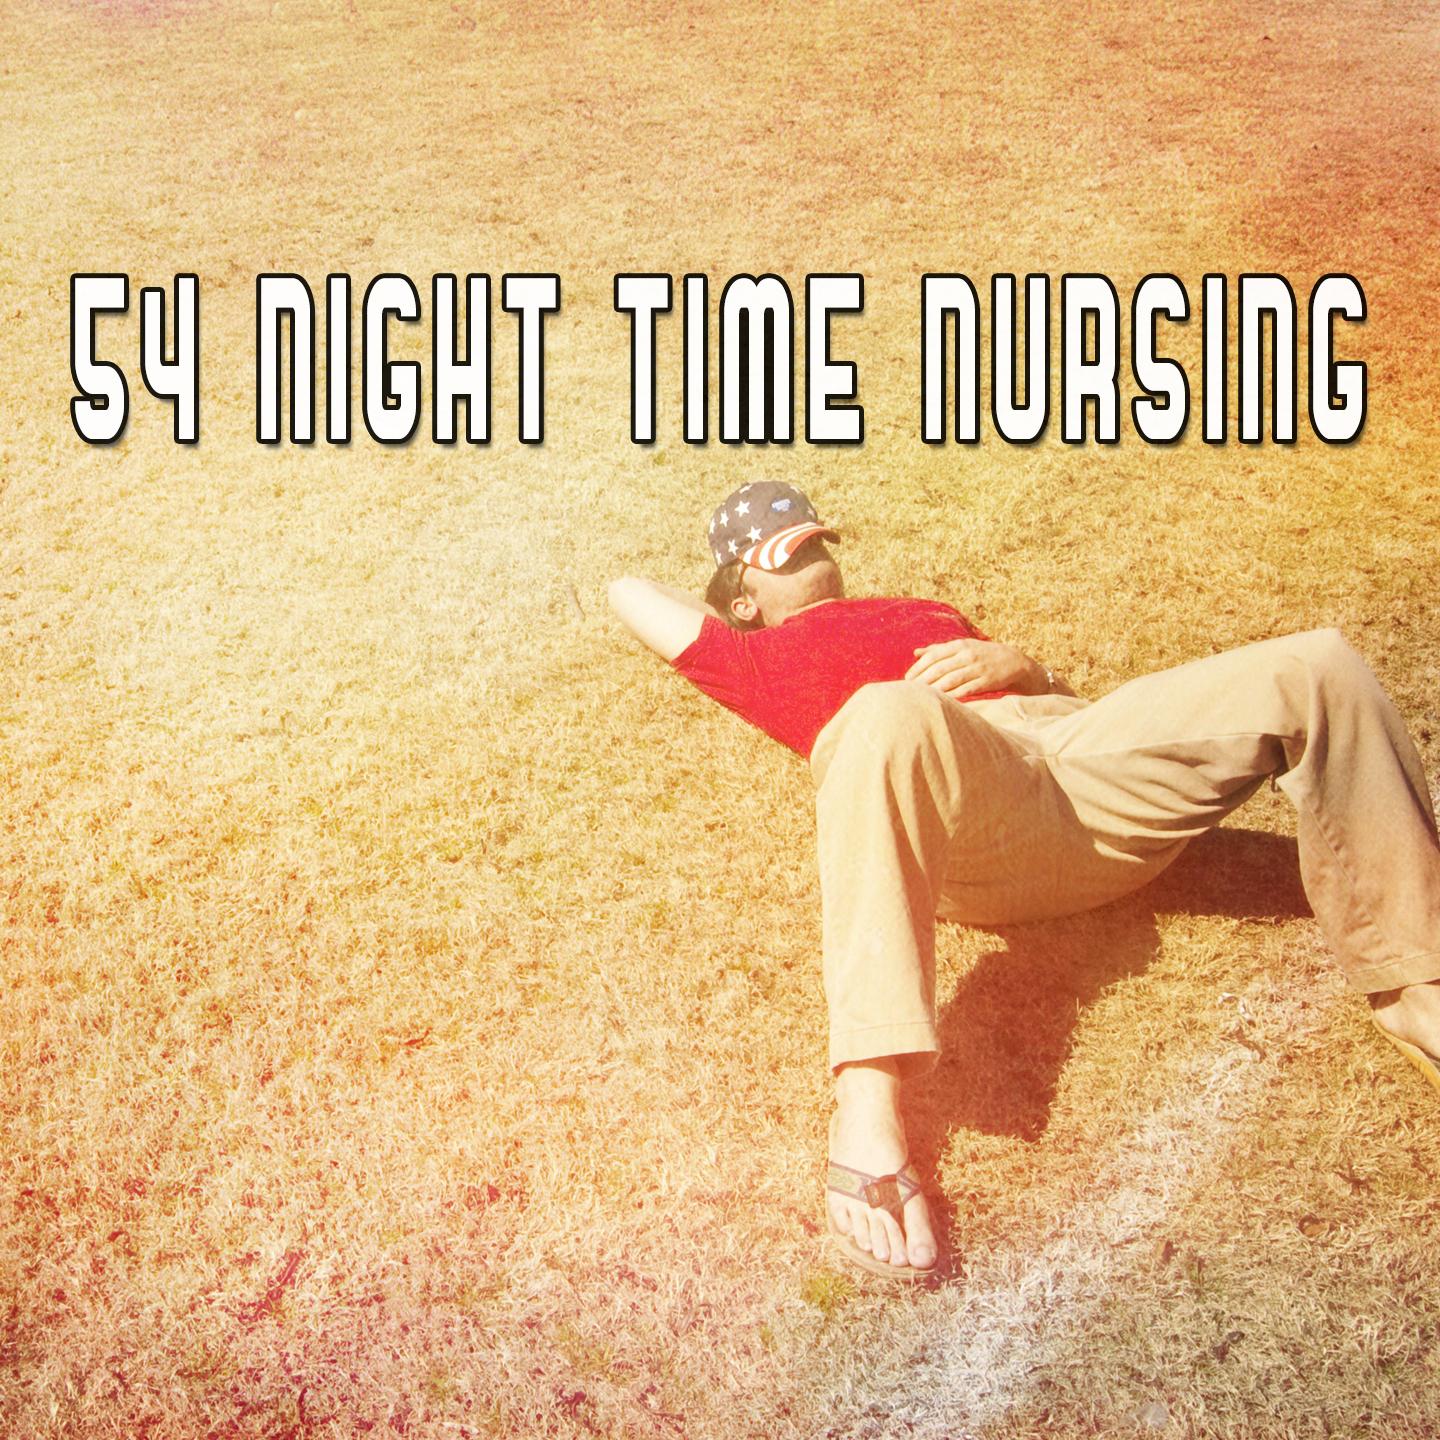 54 Night Time Nursing